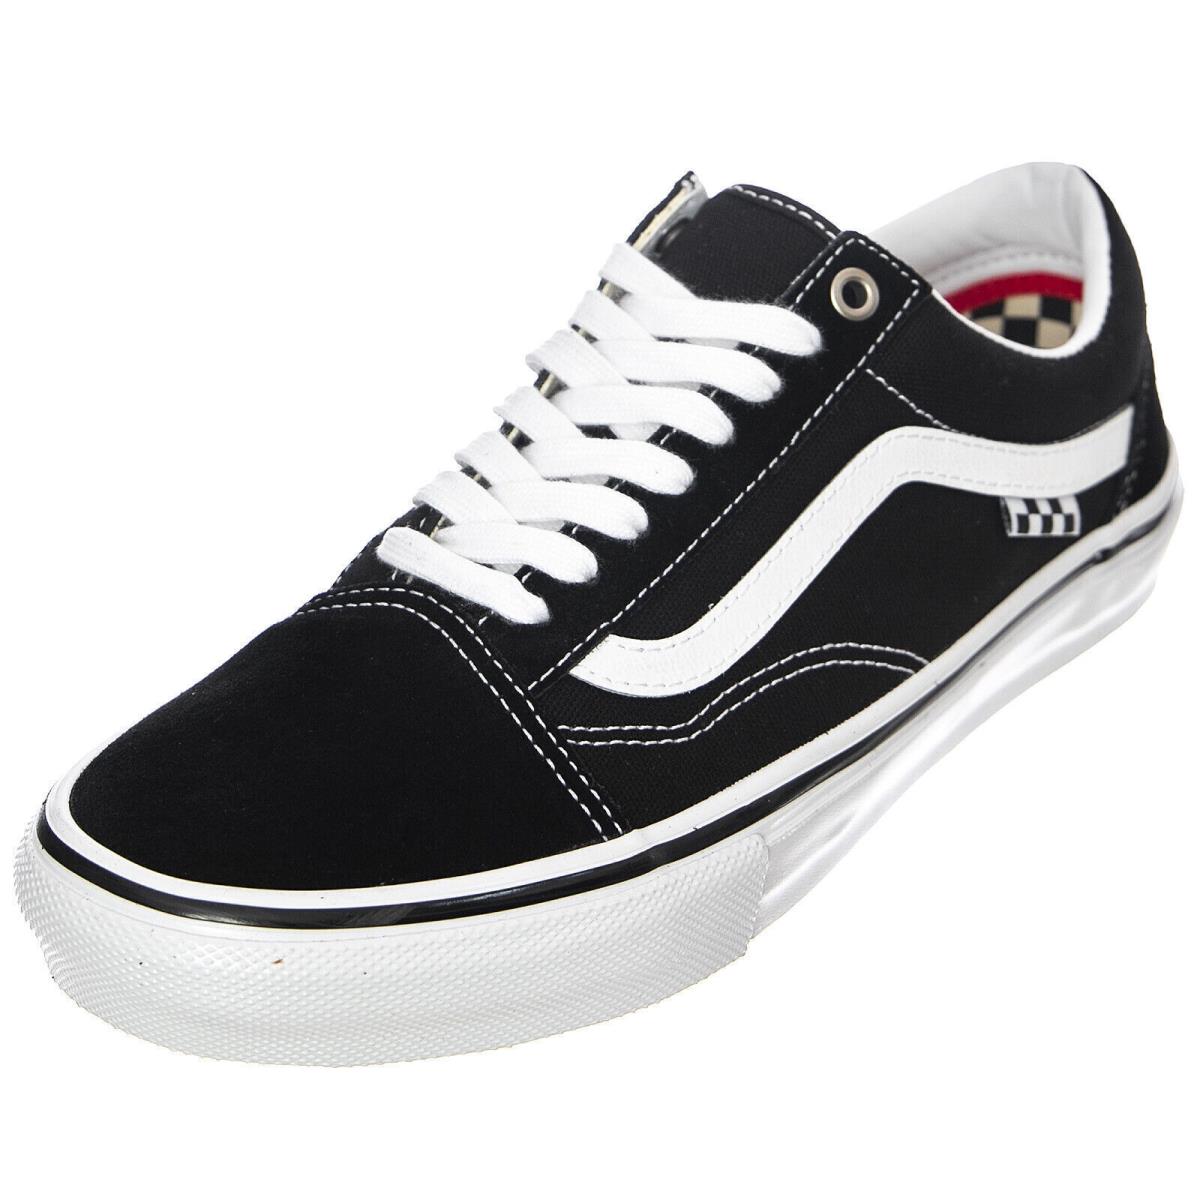 Vans Skate Old Skool Sneakers Black/white Classic Men`s Size 9.0 Women 10.5 - Black/White